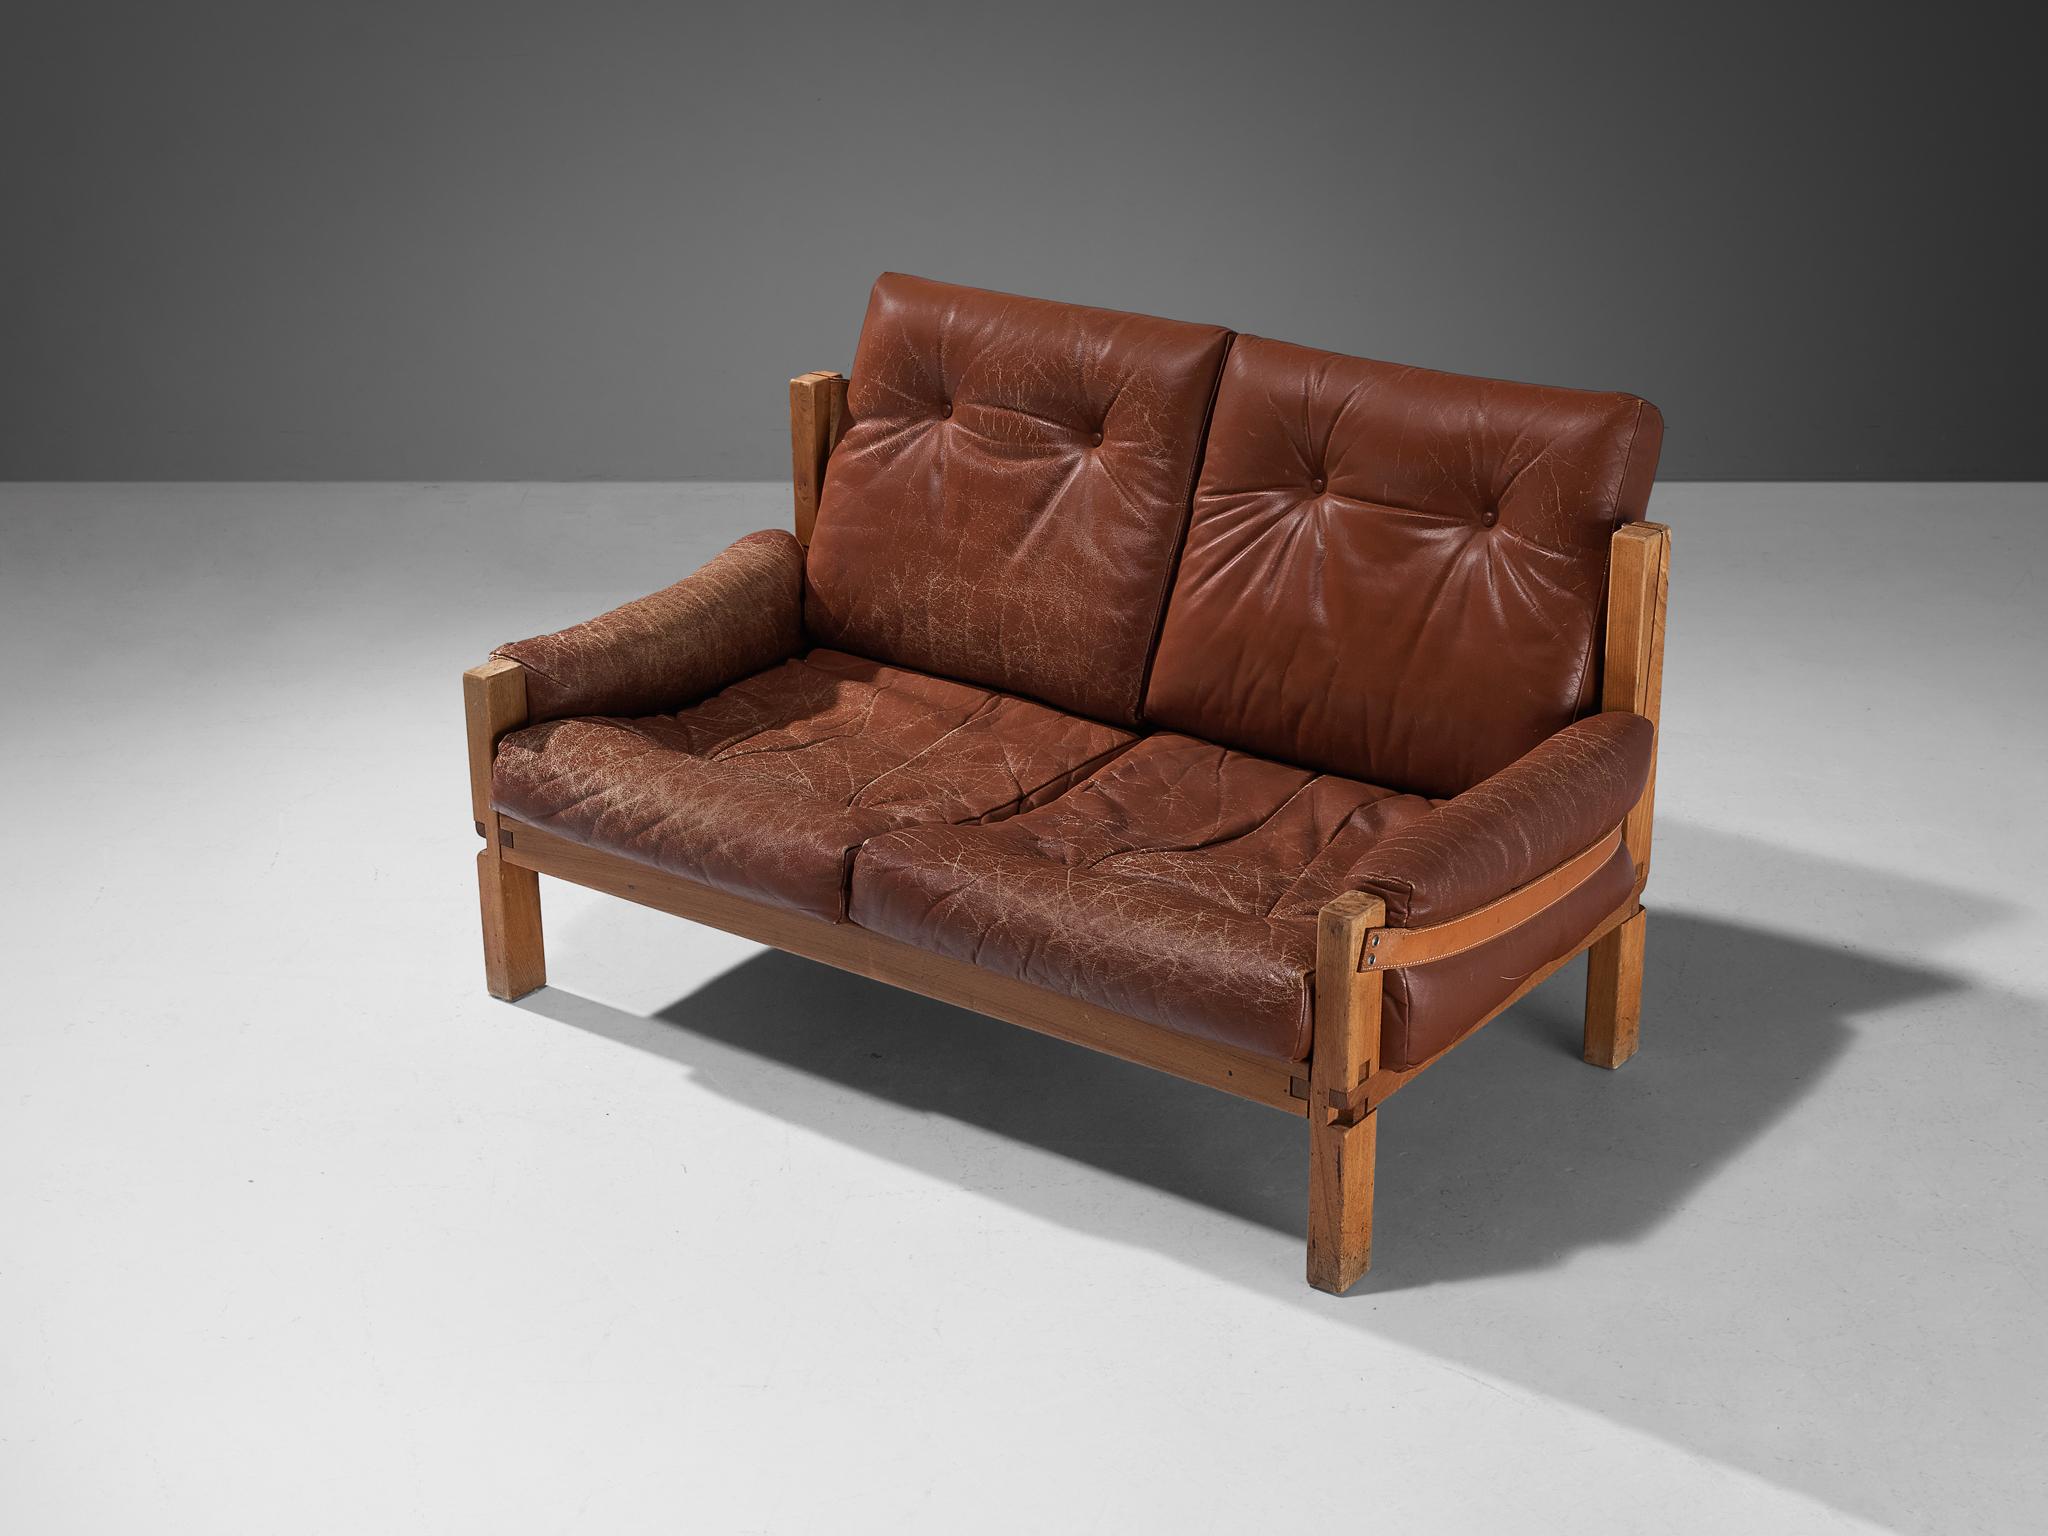 Pierre Chapo, Sofa 'S22', Ulme, Leder, Frankreich, Entwurf 1967

Dieses Sofa gehört zu den frühen Editionen von Pierre Chapo, der für seine Verwendung von massivem Ulmenholz und sein Engagement für ein reines und klares Design und